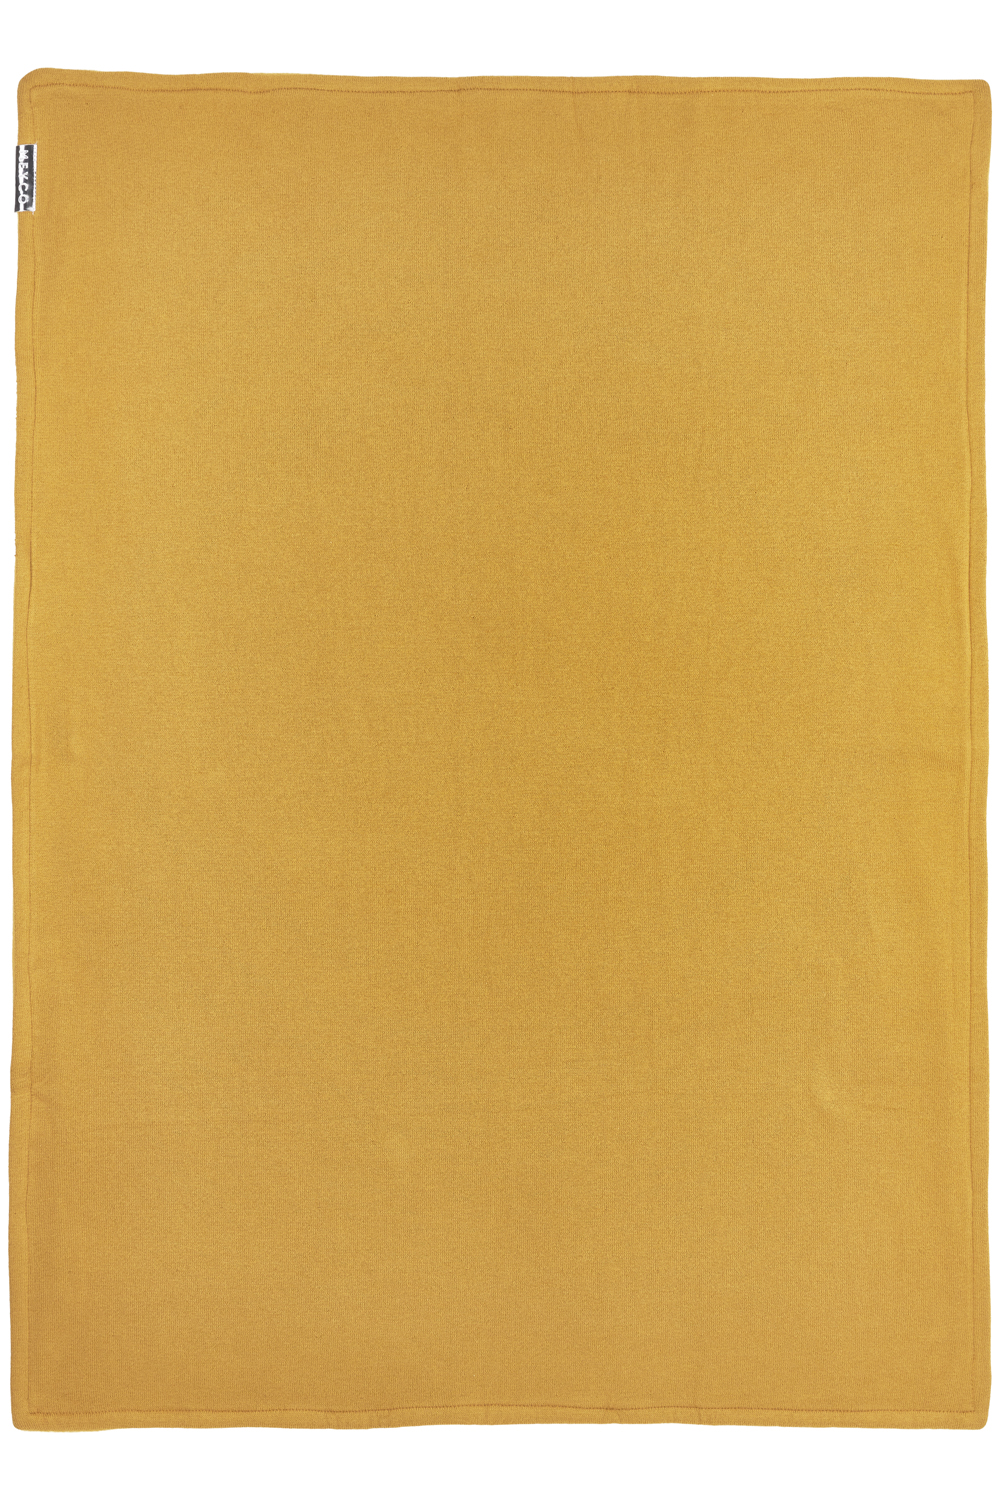 Cot bed blanket Knit Basic velvet - honey gold - 100x150cm